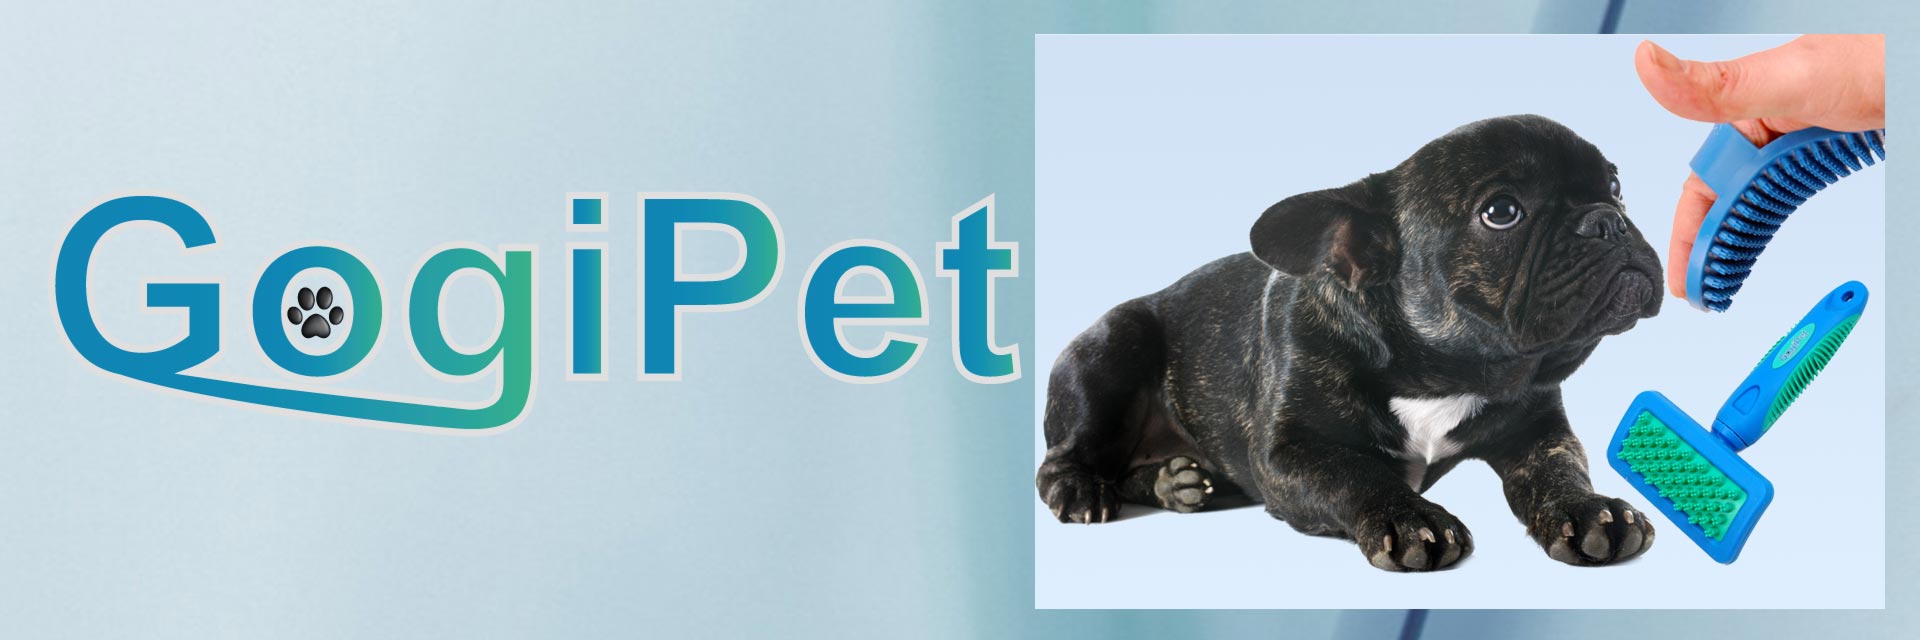 Gummibürsten für die Hundepflege und Katzepflege